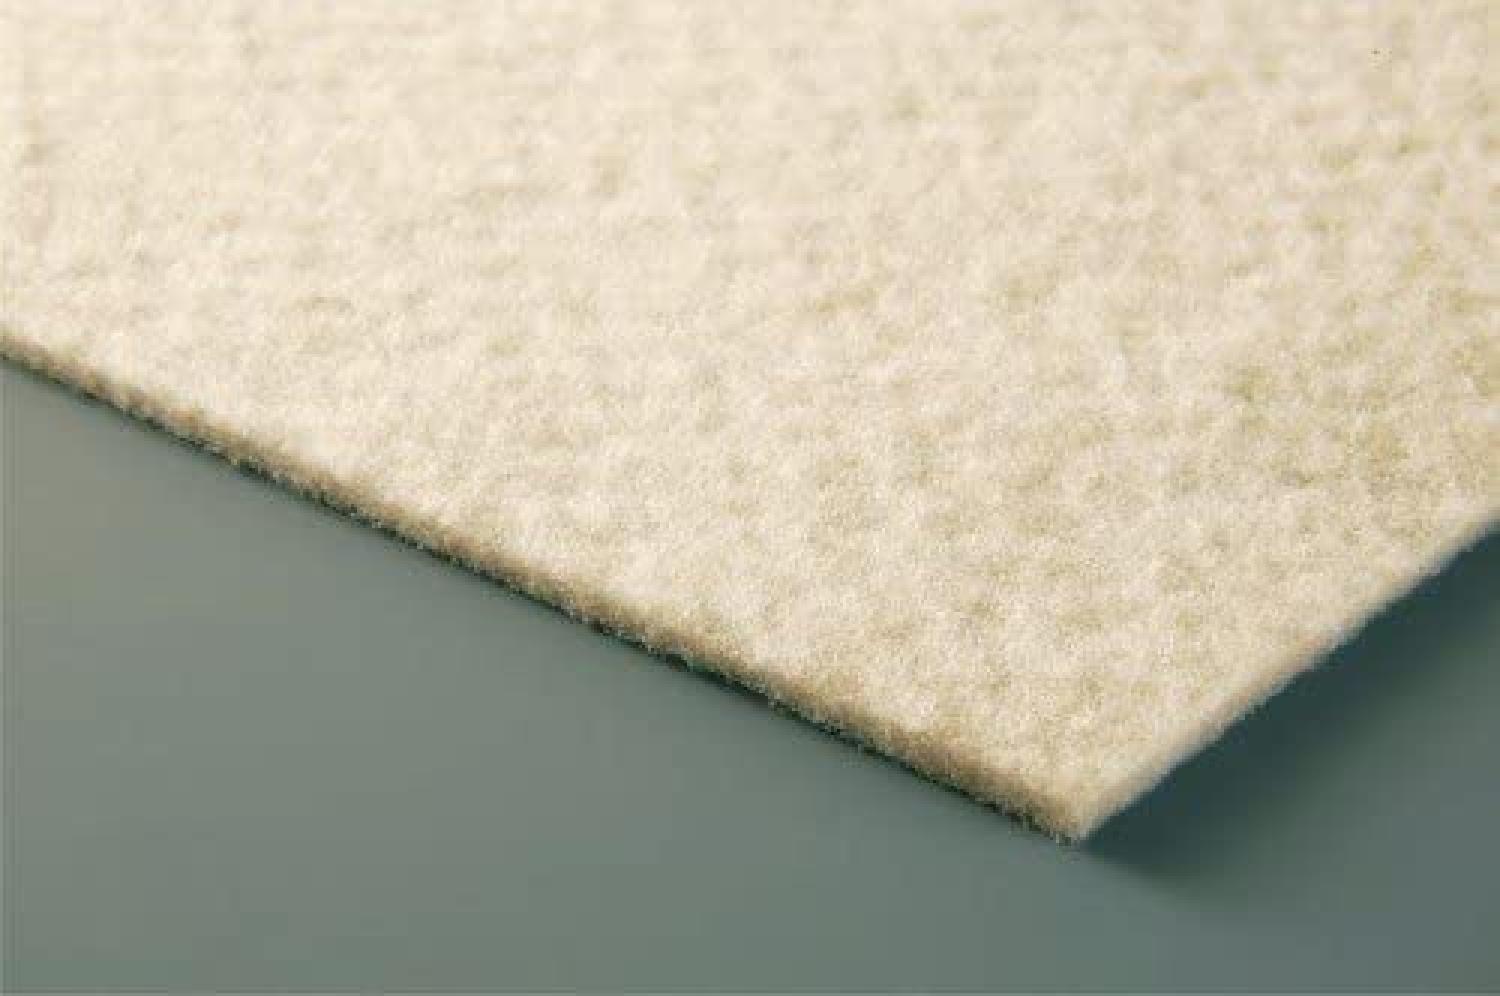 Ako Teppichunterlage VLIES PLUS für textile und glatte Böden, Größe:180x290 cm Bild 1